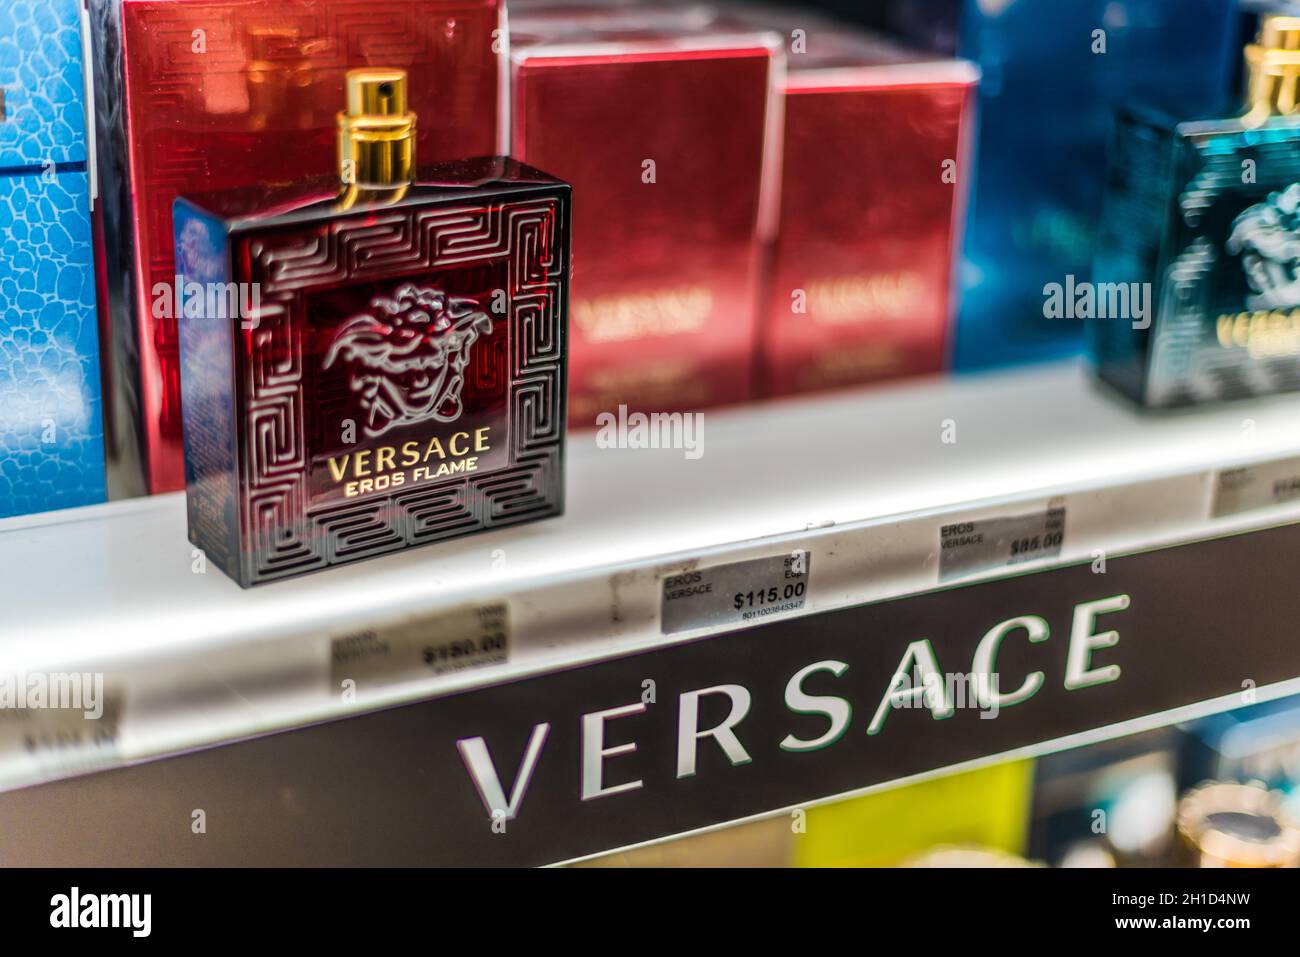 SINGAPORE - MAR 5, 2020: Bottiglie di profumo di Versace su uno scaffale del negozio Foto Stock